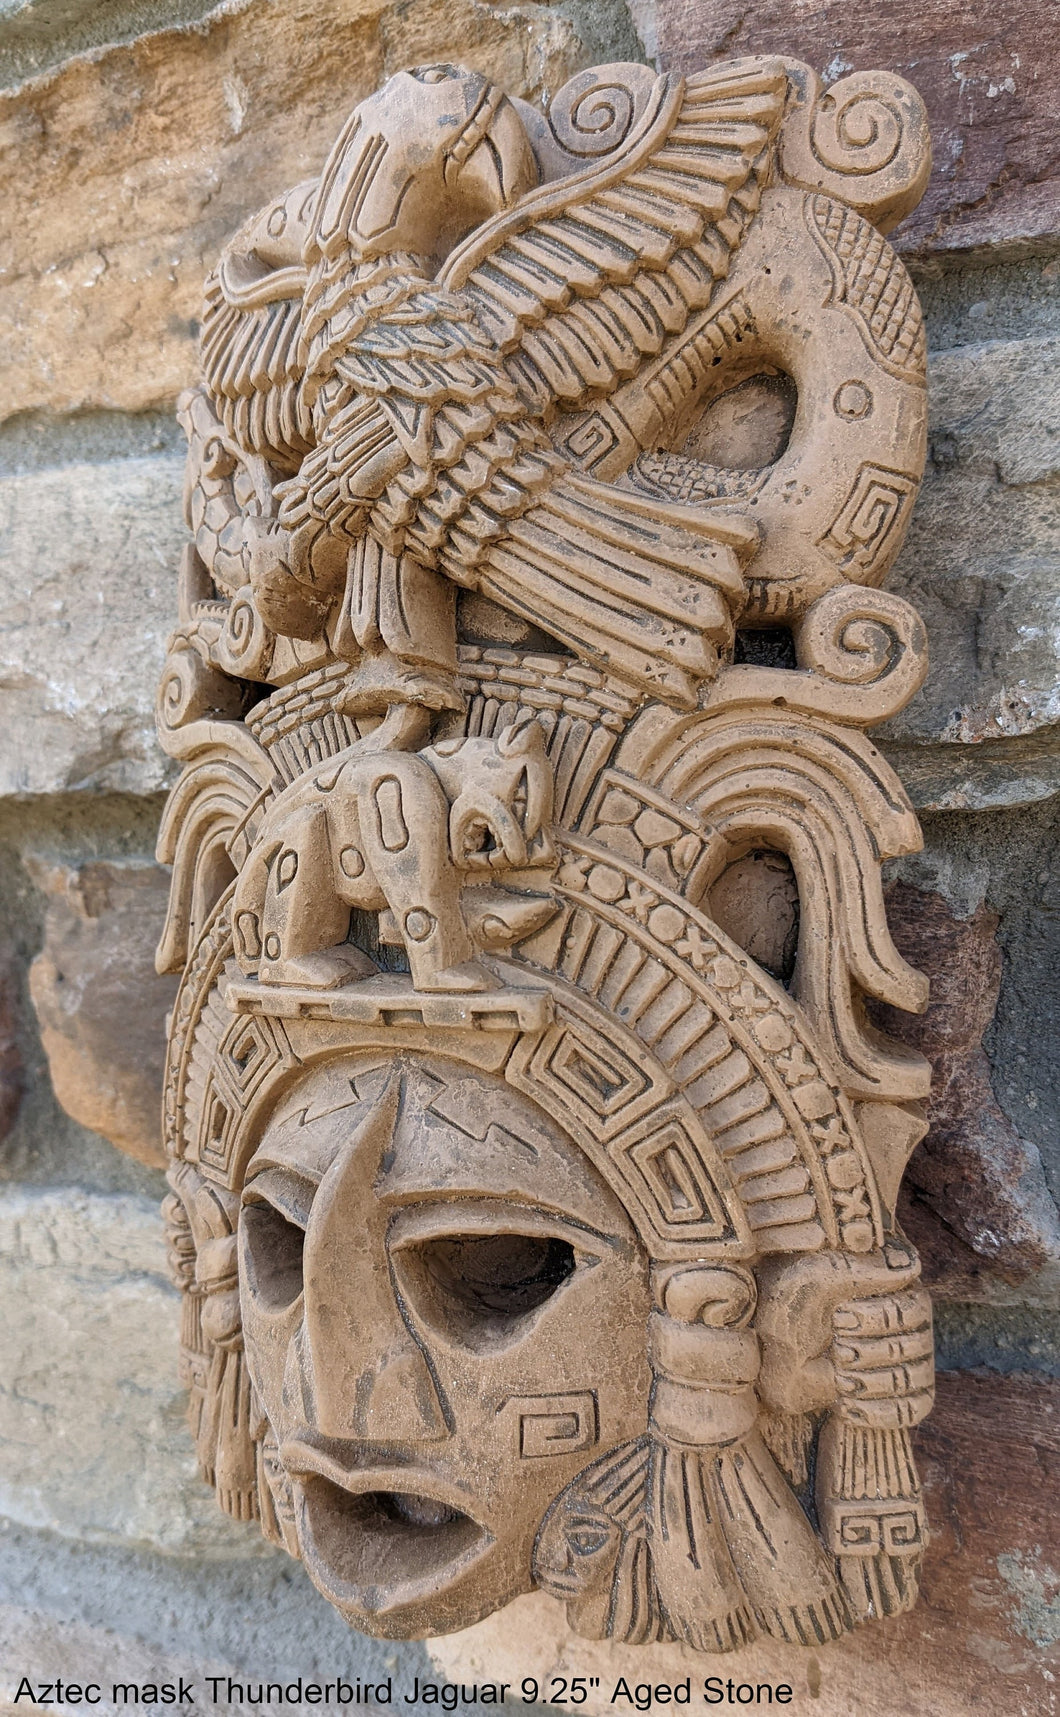 Aztec Maya Artifact mask Thunderbird Jaguar Sculpture Statue 9.25